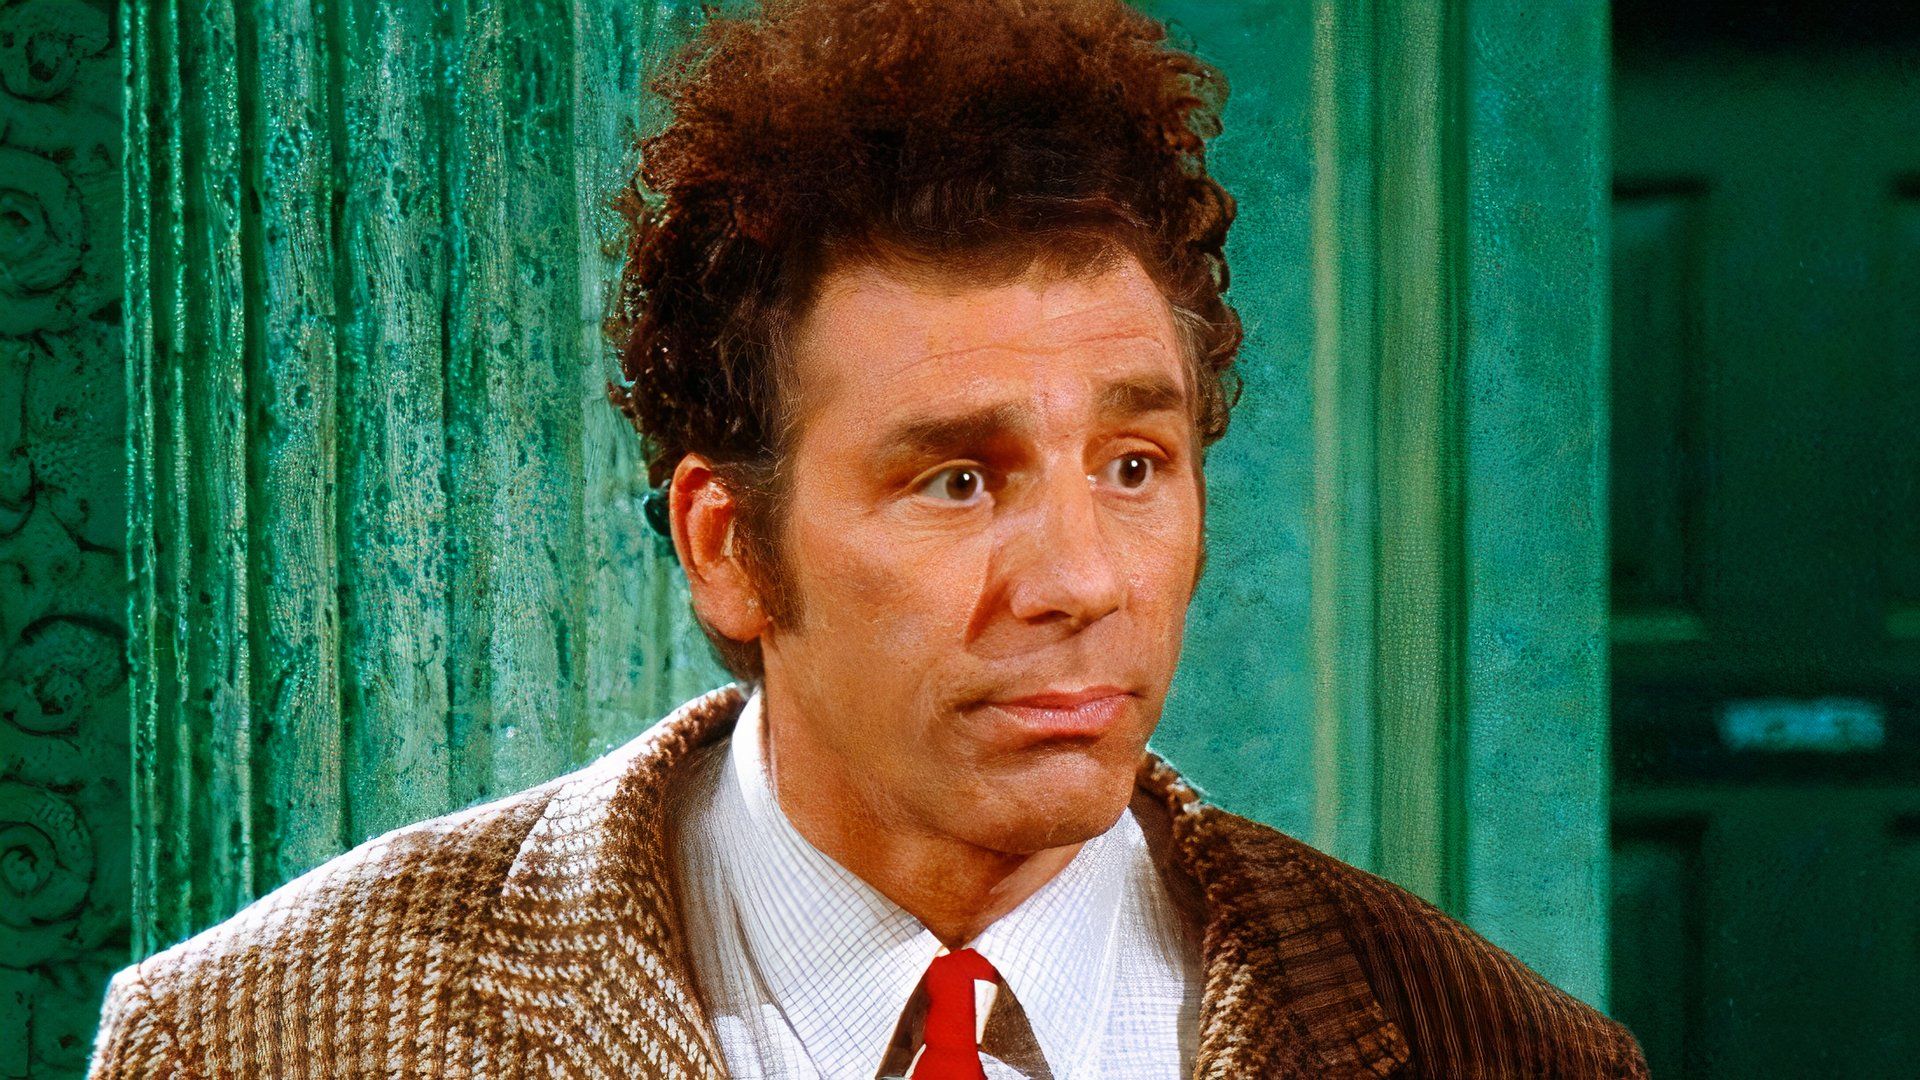 Michael Richards as Kramer in Seinfeld.